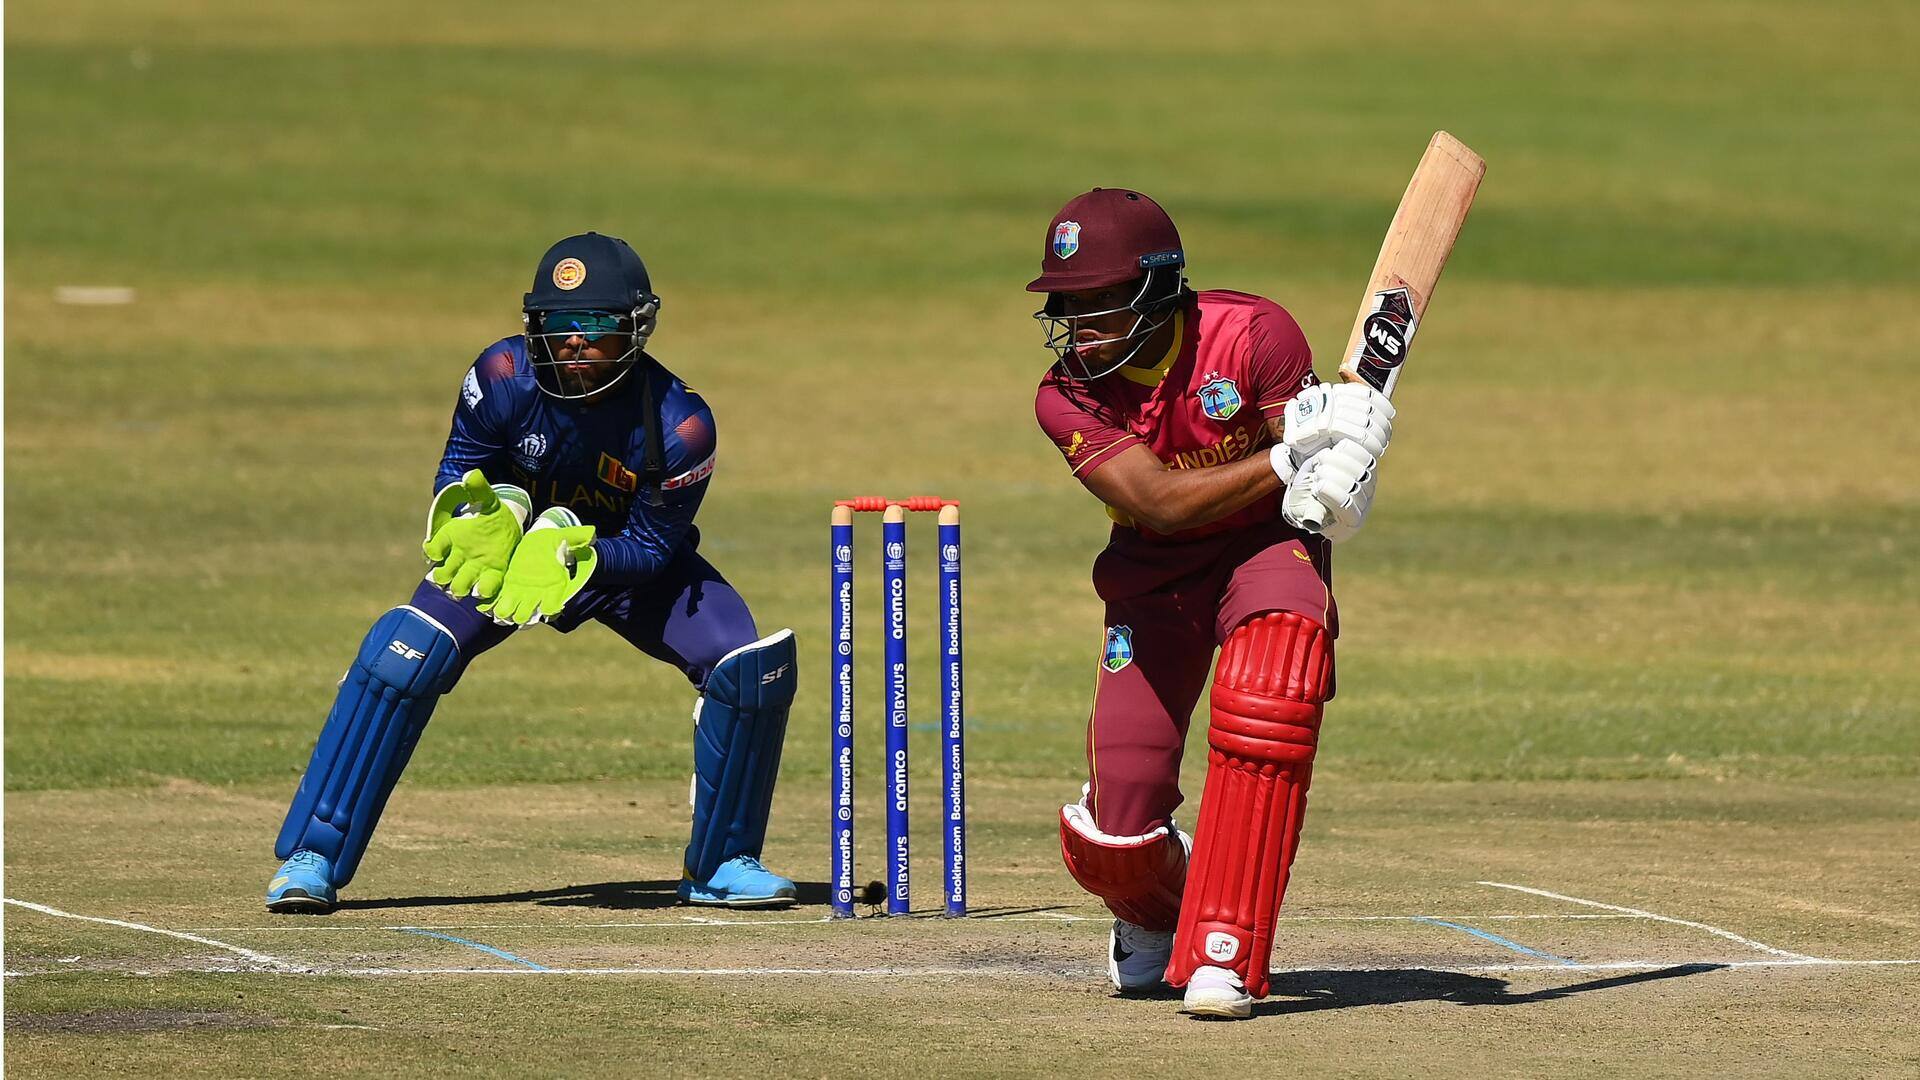 West Indies's Keacy Carty slams career-best 88 against Australia (ODIs)